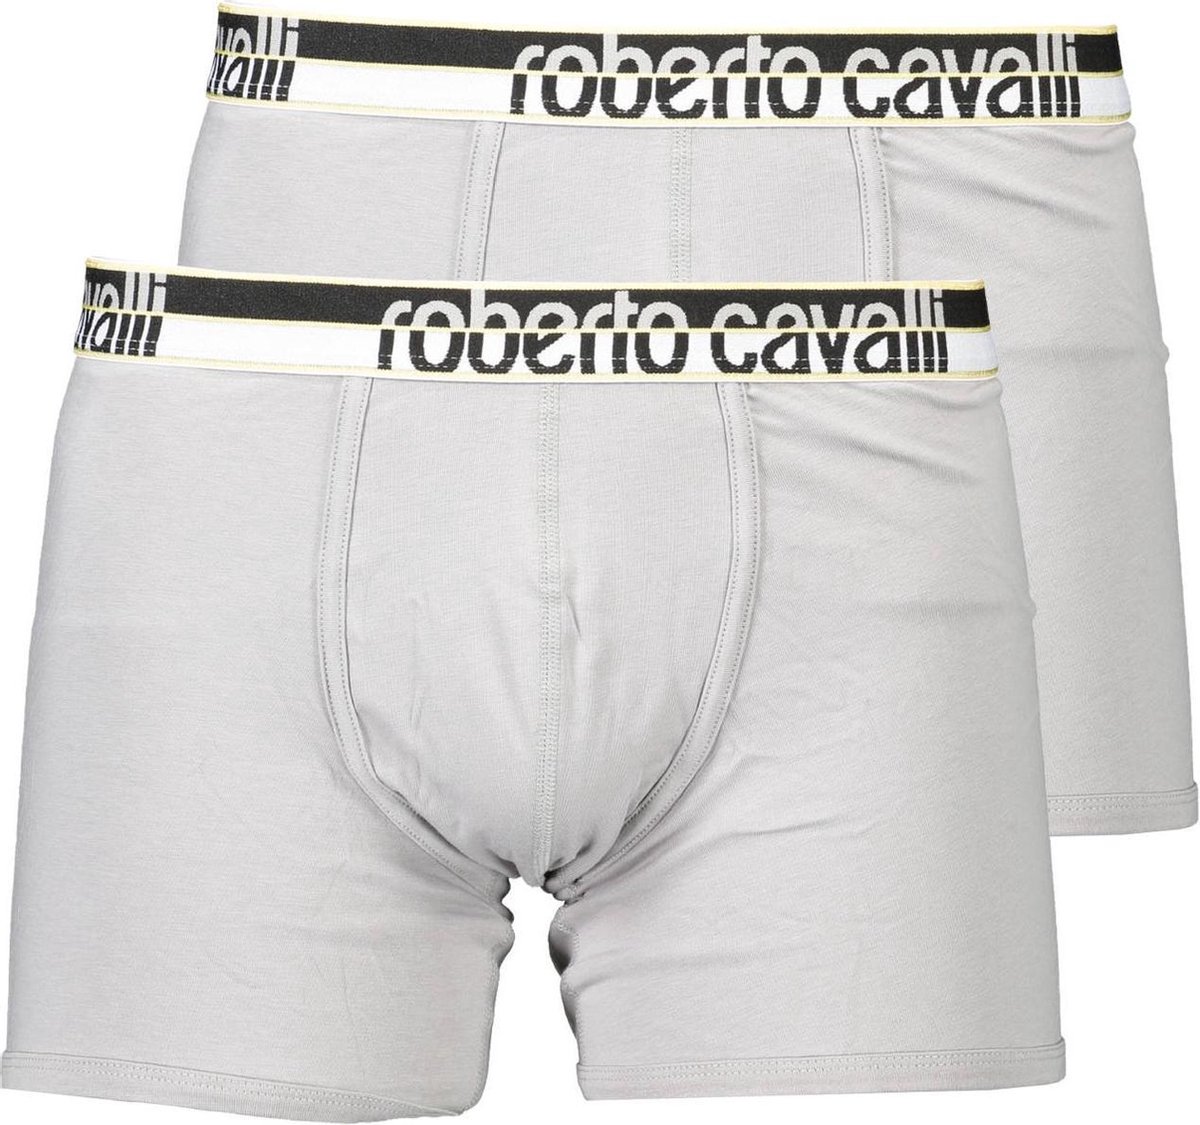 Roberto Cavalli boxer - onderbroek - heren - 2 pack - grijs met goud - M |  bol